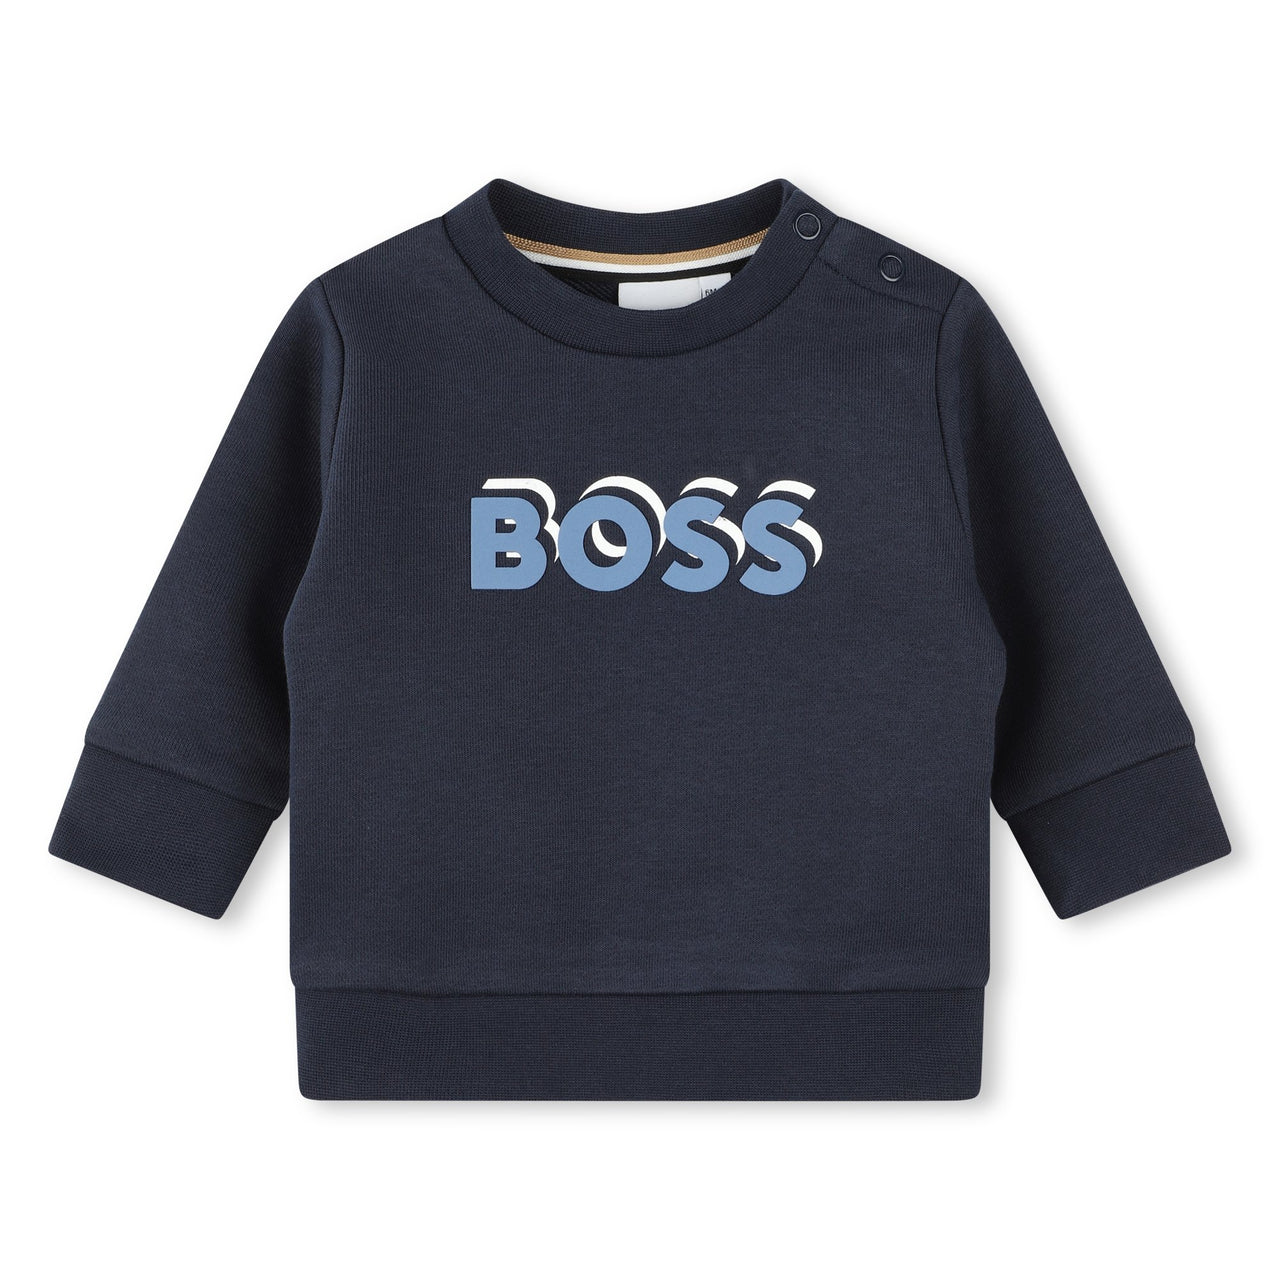 Sudadera o sweter para bebé Azul Boss